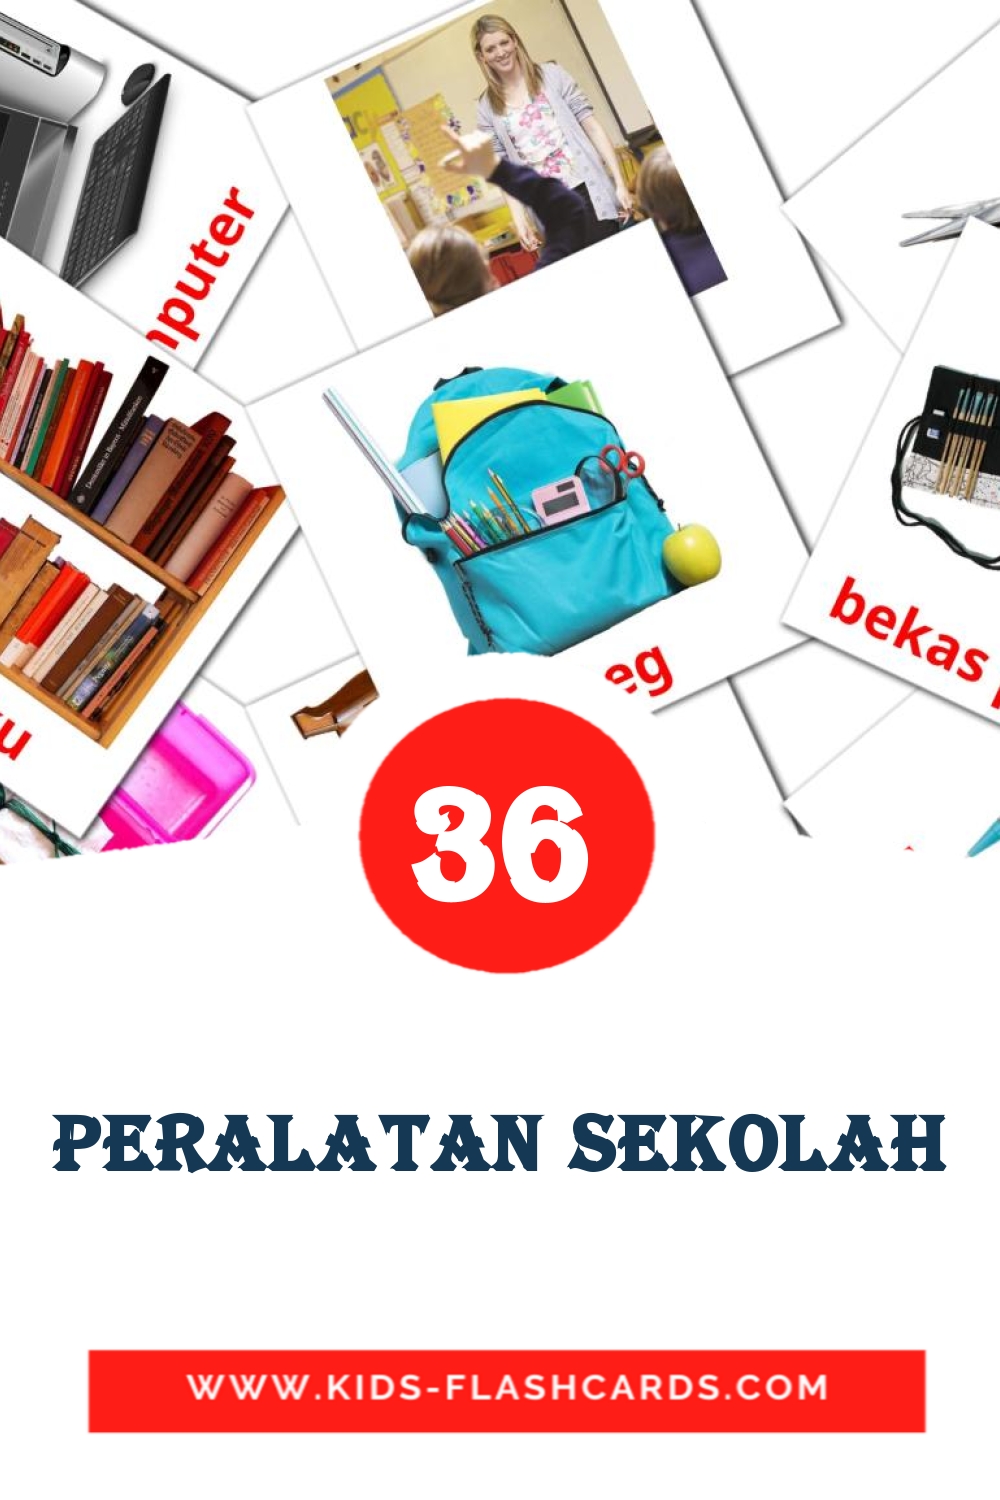 36 Peralatan Sekolah fotokaarten voor kleuters in het malay